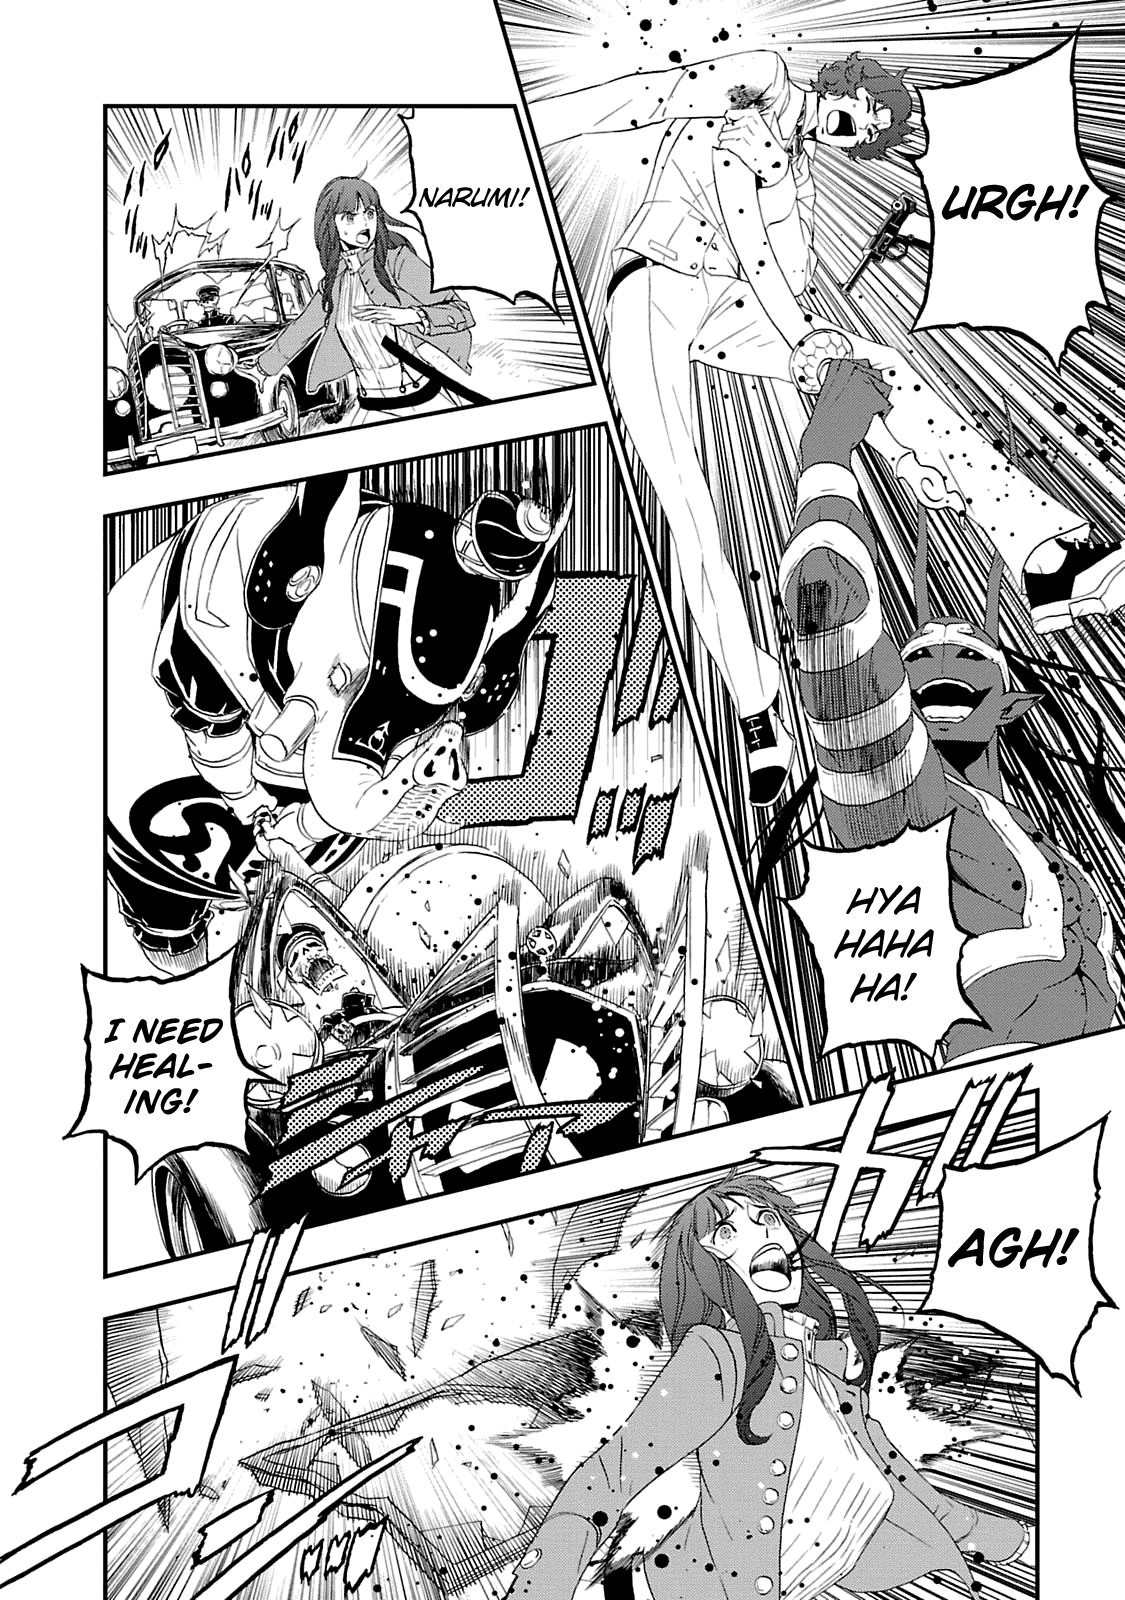 Shin Megami Tensei: Devil Summoner - Kuzunoha Raidou Tai Kodokuno Marebito Vol.4 Chapter 20